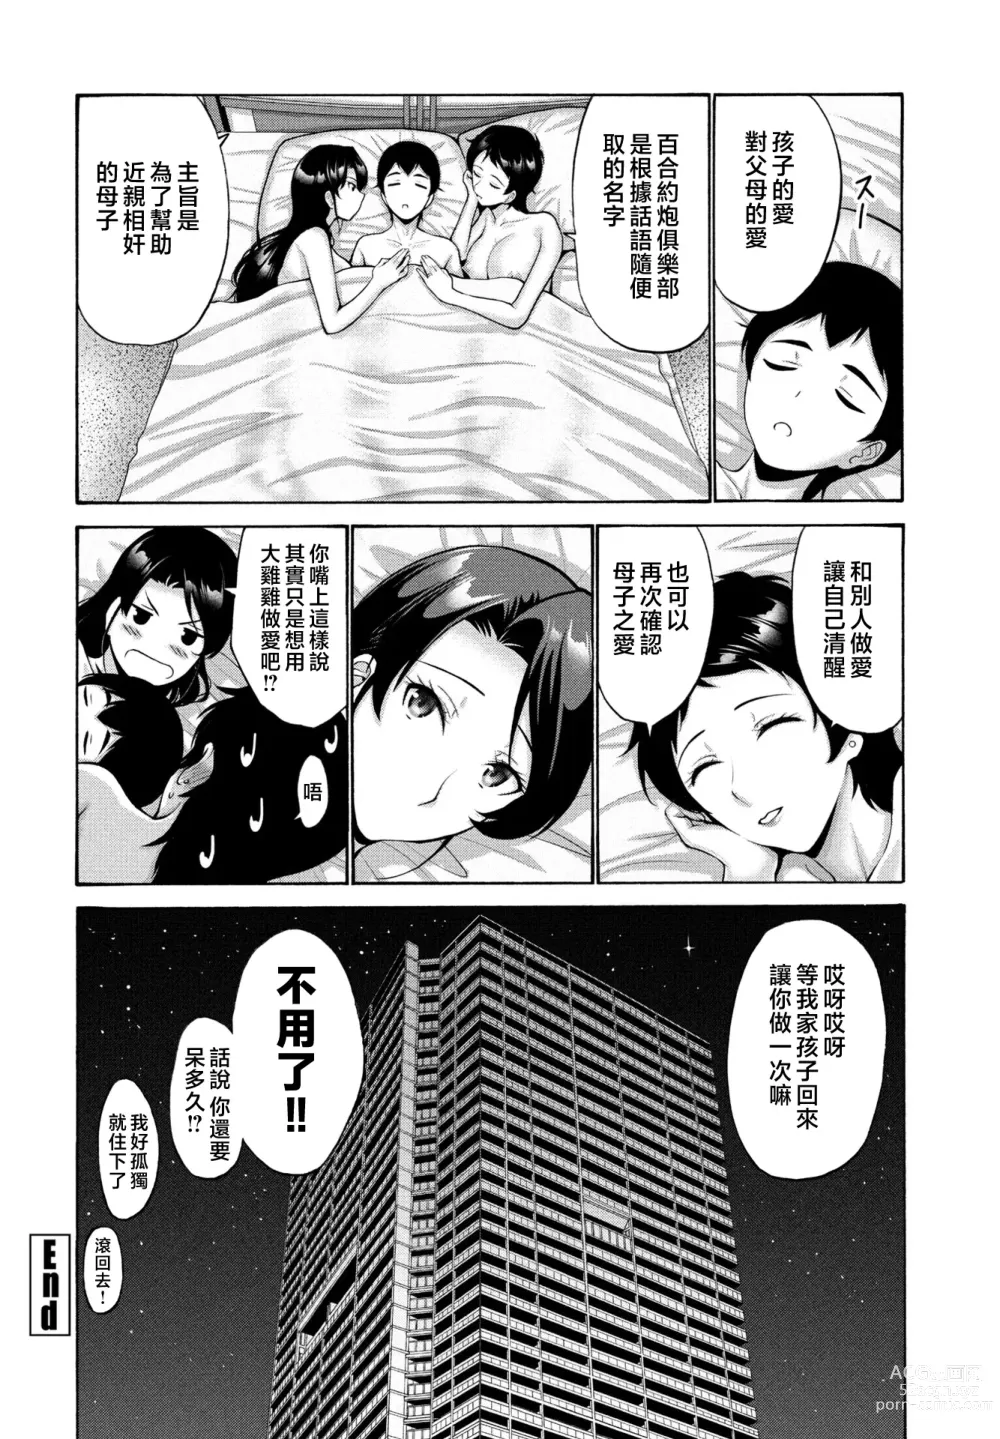 Page 58 of manga Hamayuri Club Ch. 1-3